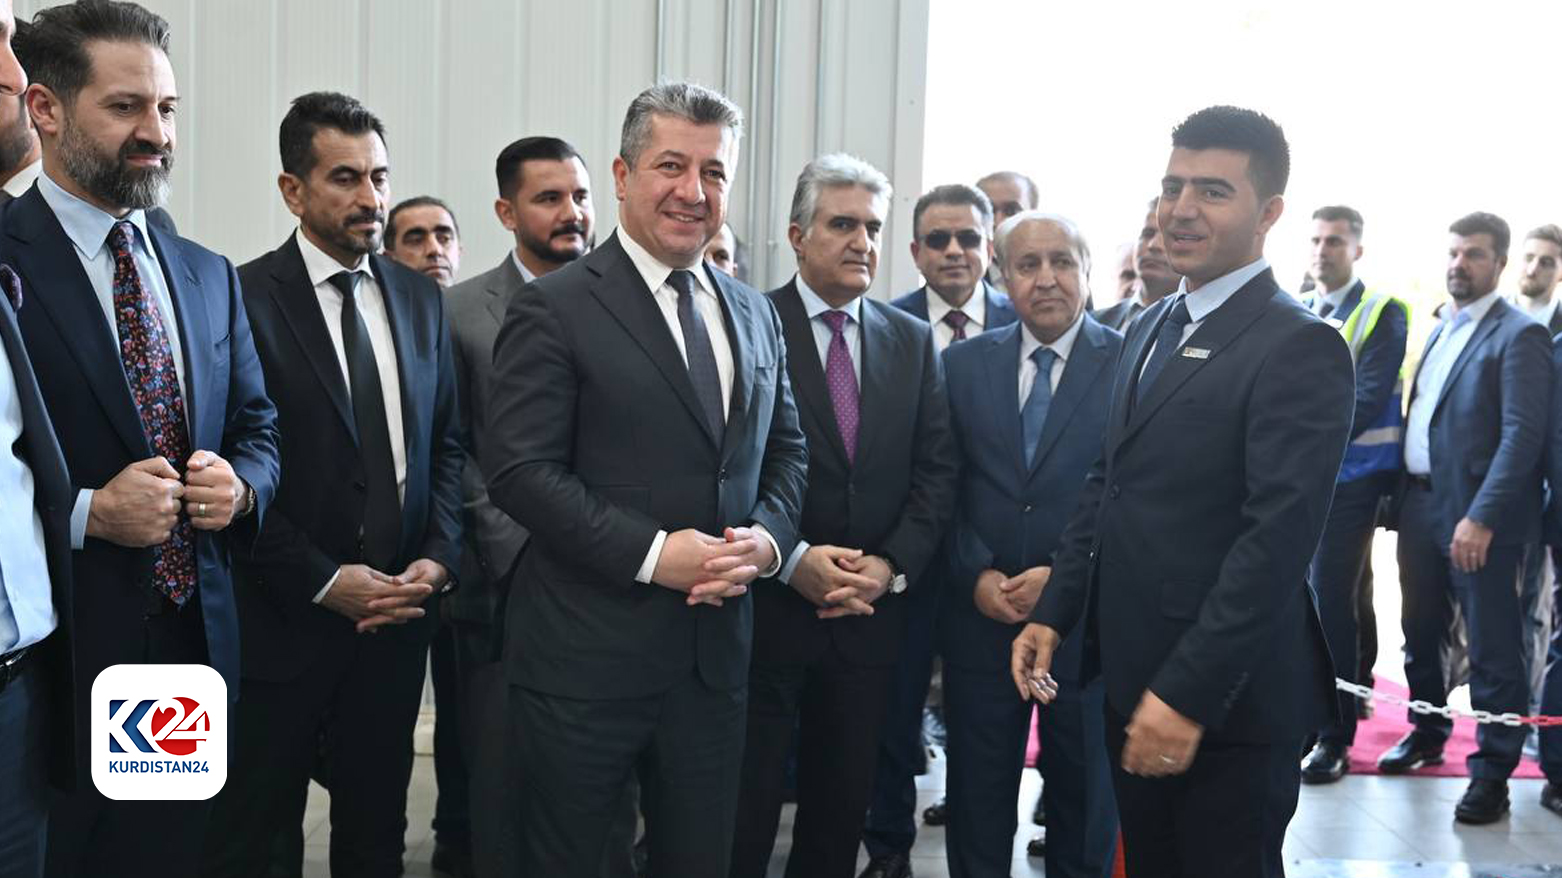 رئيس حكومة إقليم كوردستان يزور معمل "راسان" لانتاج زيت الزيتون في حلبجة